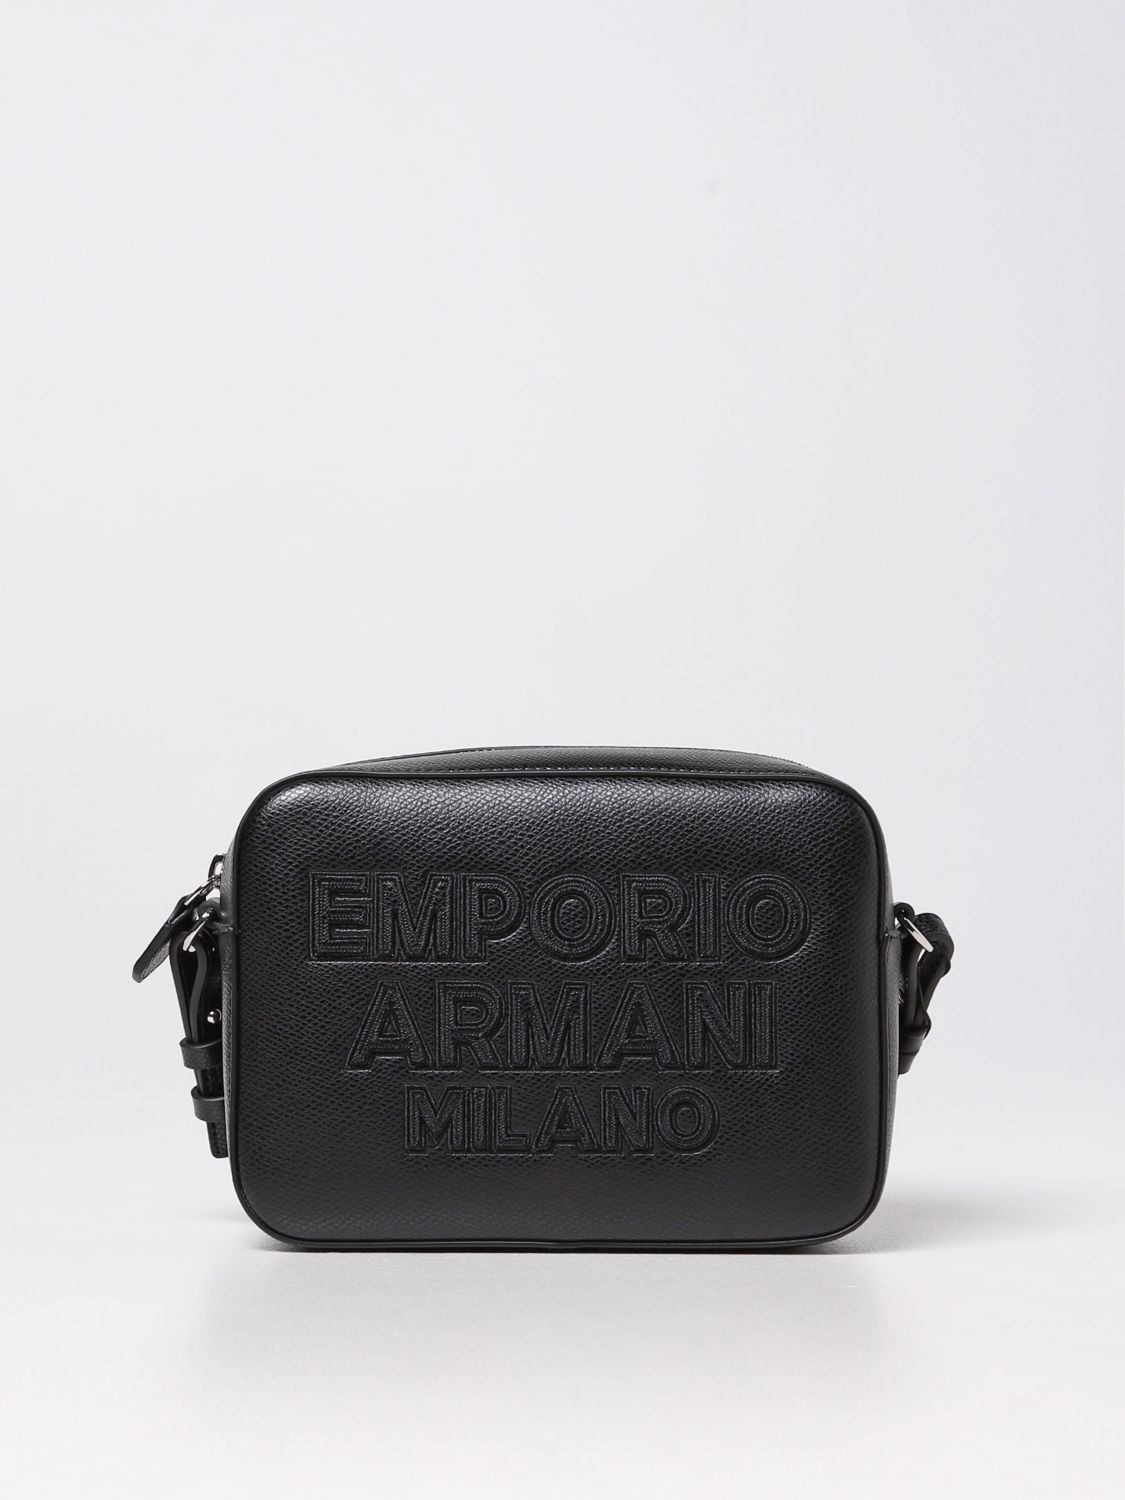 Borse a tracolla Emporio Armani: Borsa camera case Emporio Armani in pelle sintetica nero 1 1